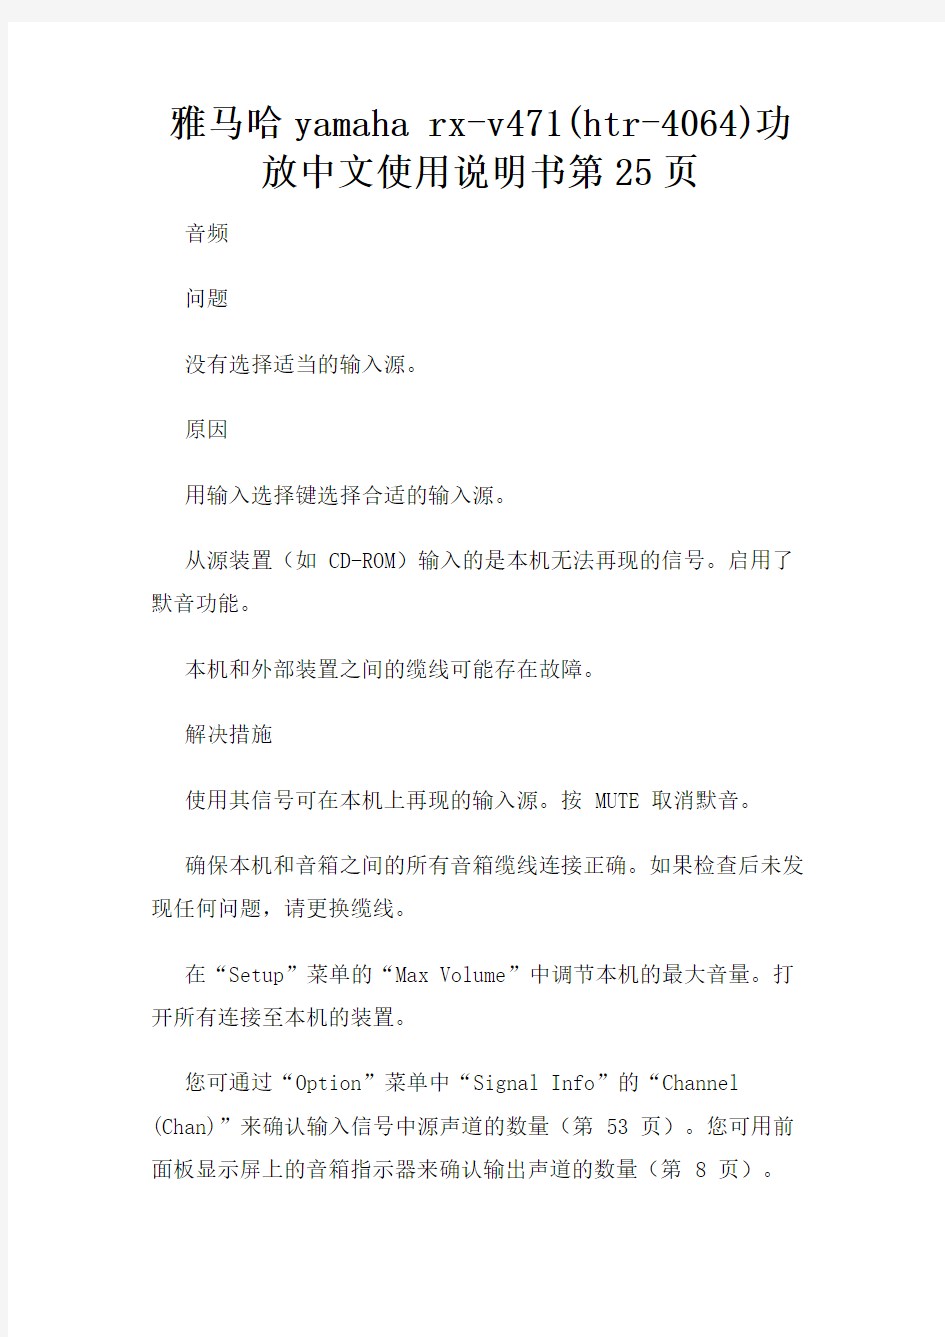 雅马哈yamaha rx-v471(htr-4064)功放中文使用说明书第25页